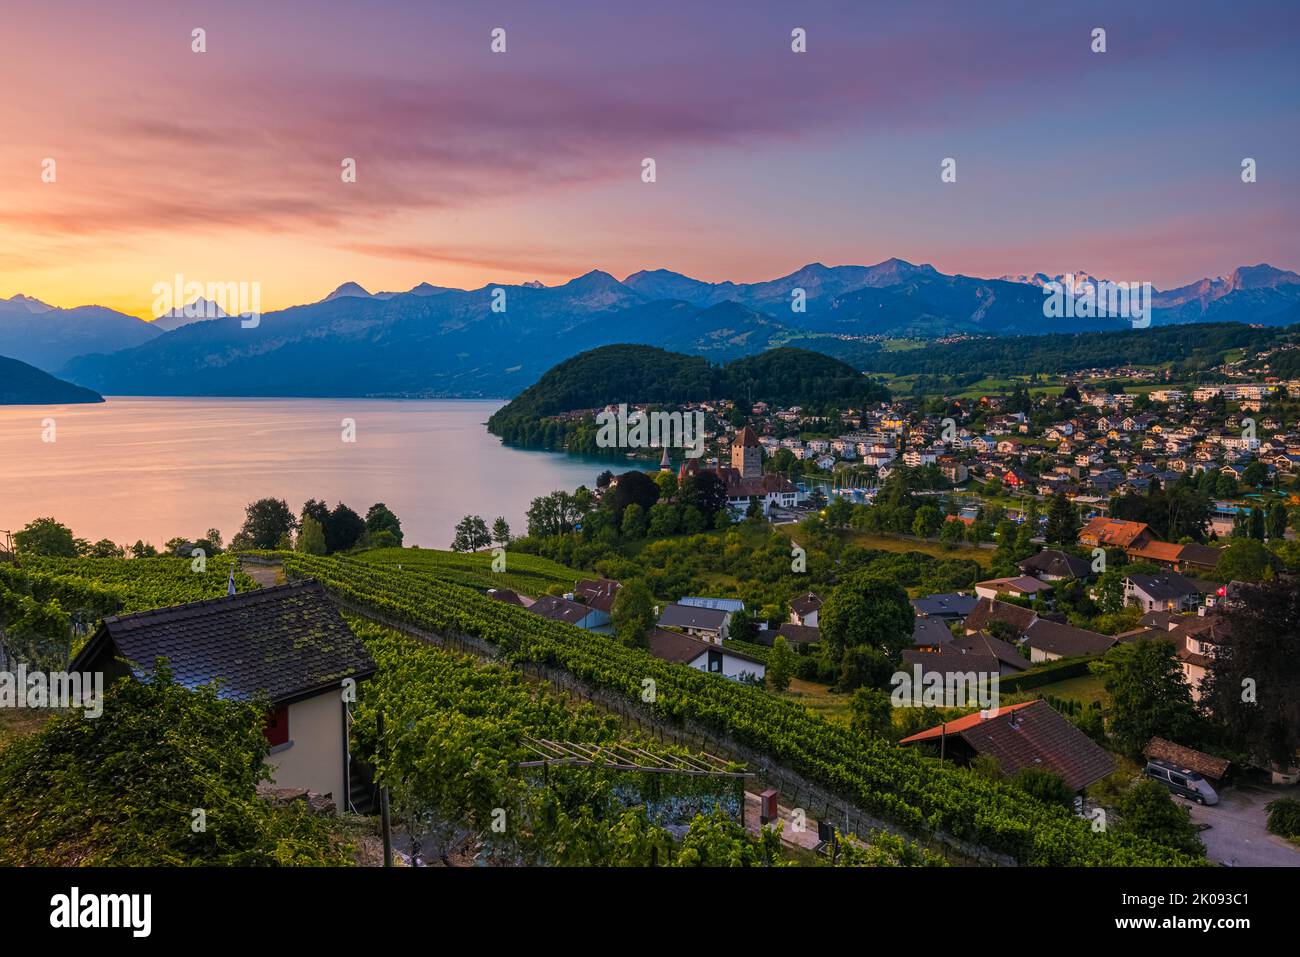 Un hermoso amanecer de verano en Spiez en el lago Thun, situado en el Oberland bernés. Spiez forma parte del cantón suizo de Berna, en el centro de Suiza. T Foto de stock